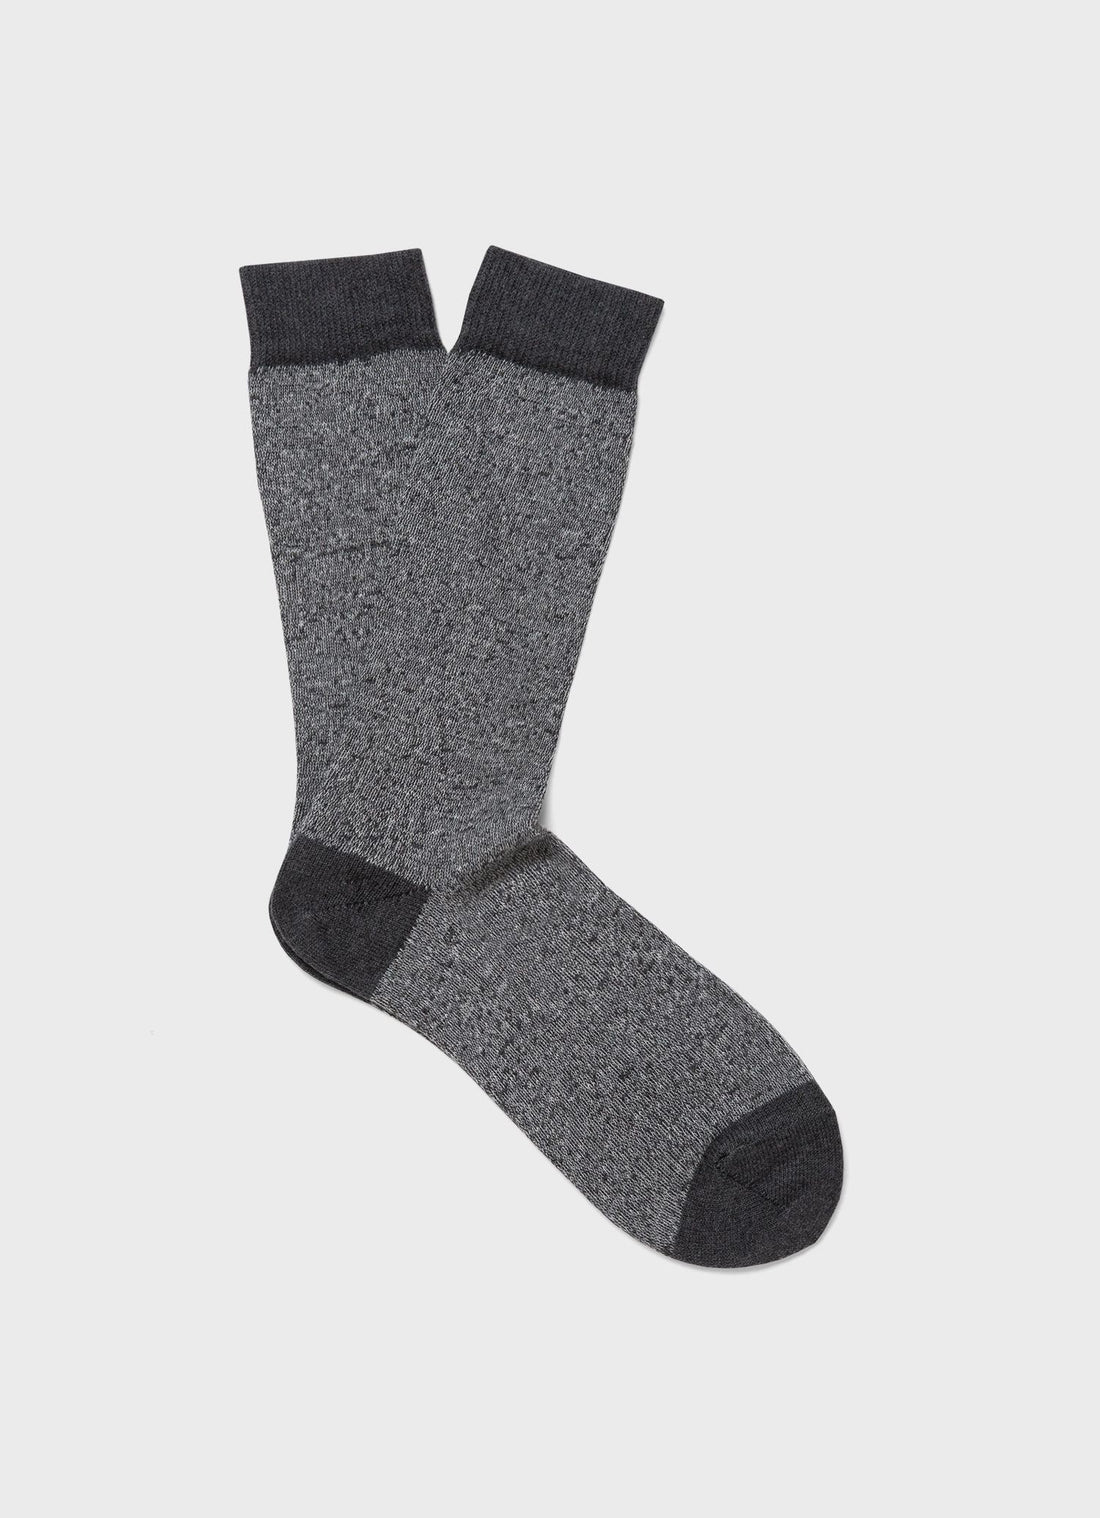 Men's Cotton Socks in Grey Marl Twist